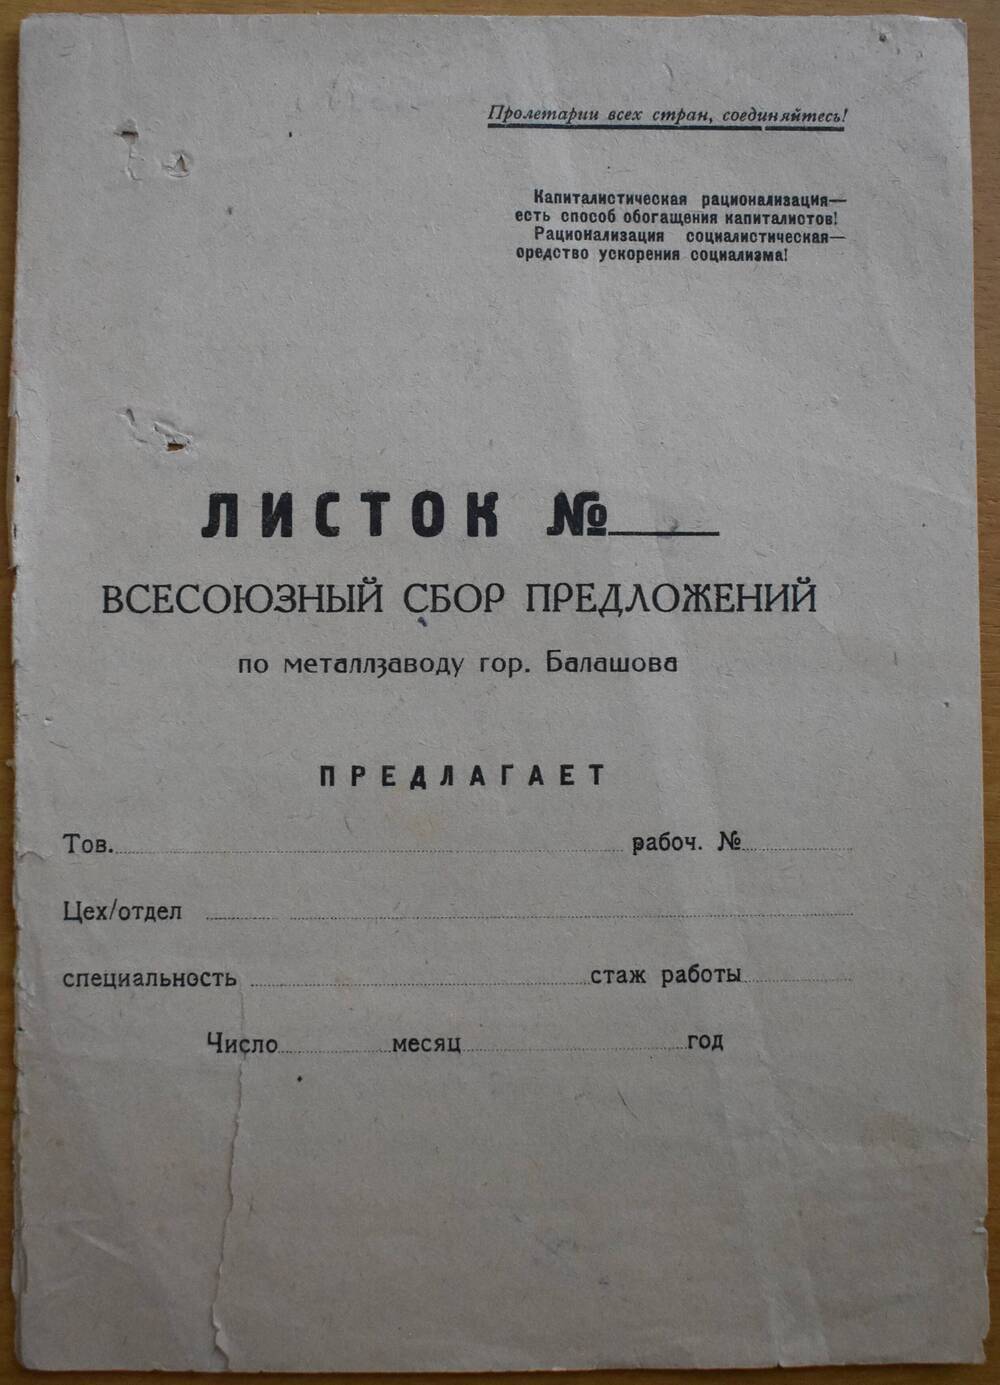 Листок
«Всесоюзный сбор предложений 
по металлзаводу гор. Балашова».